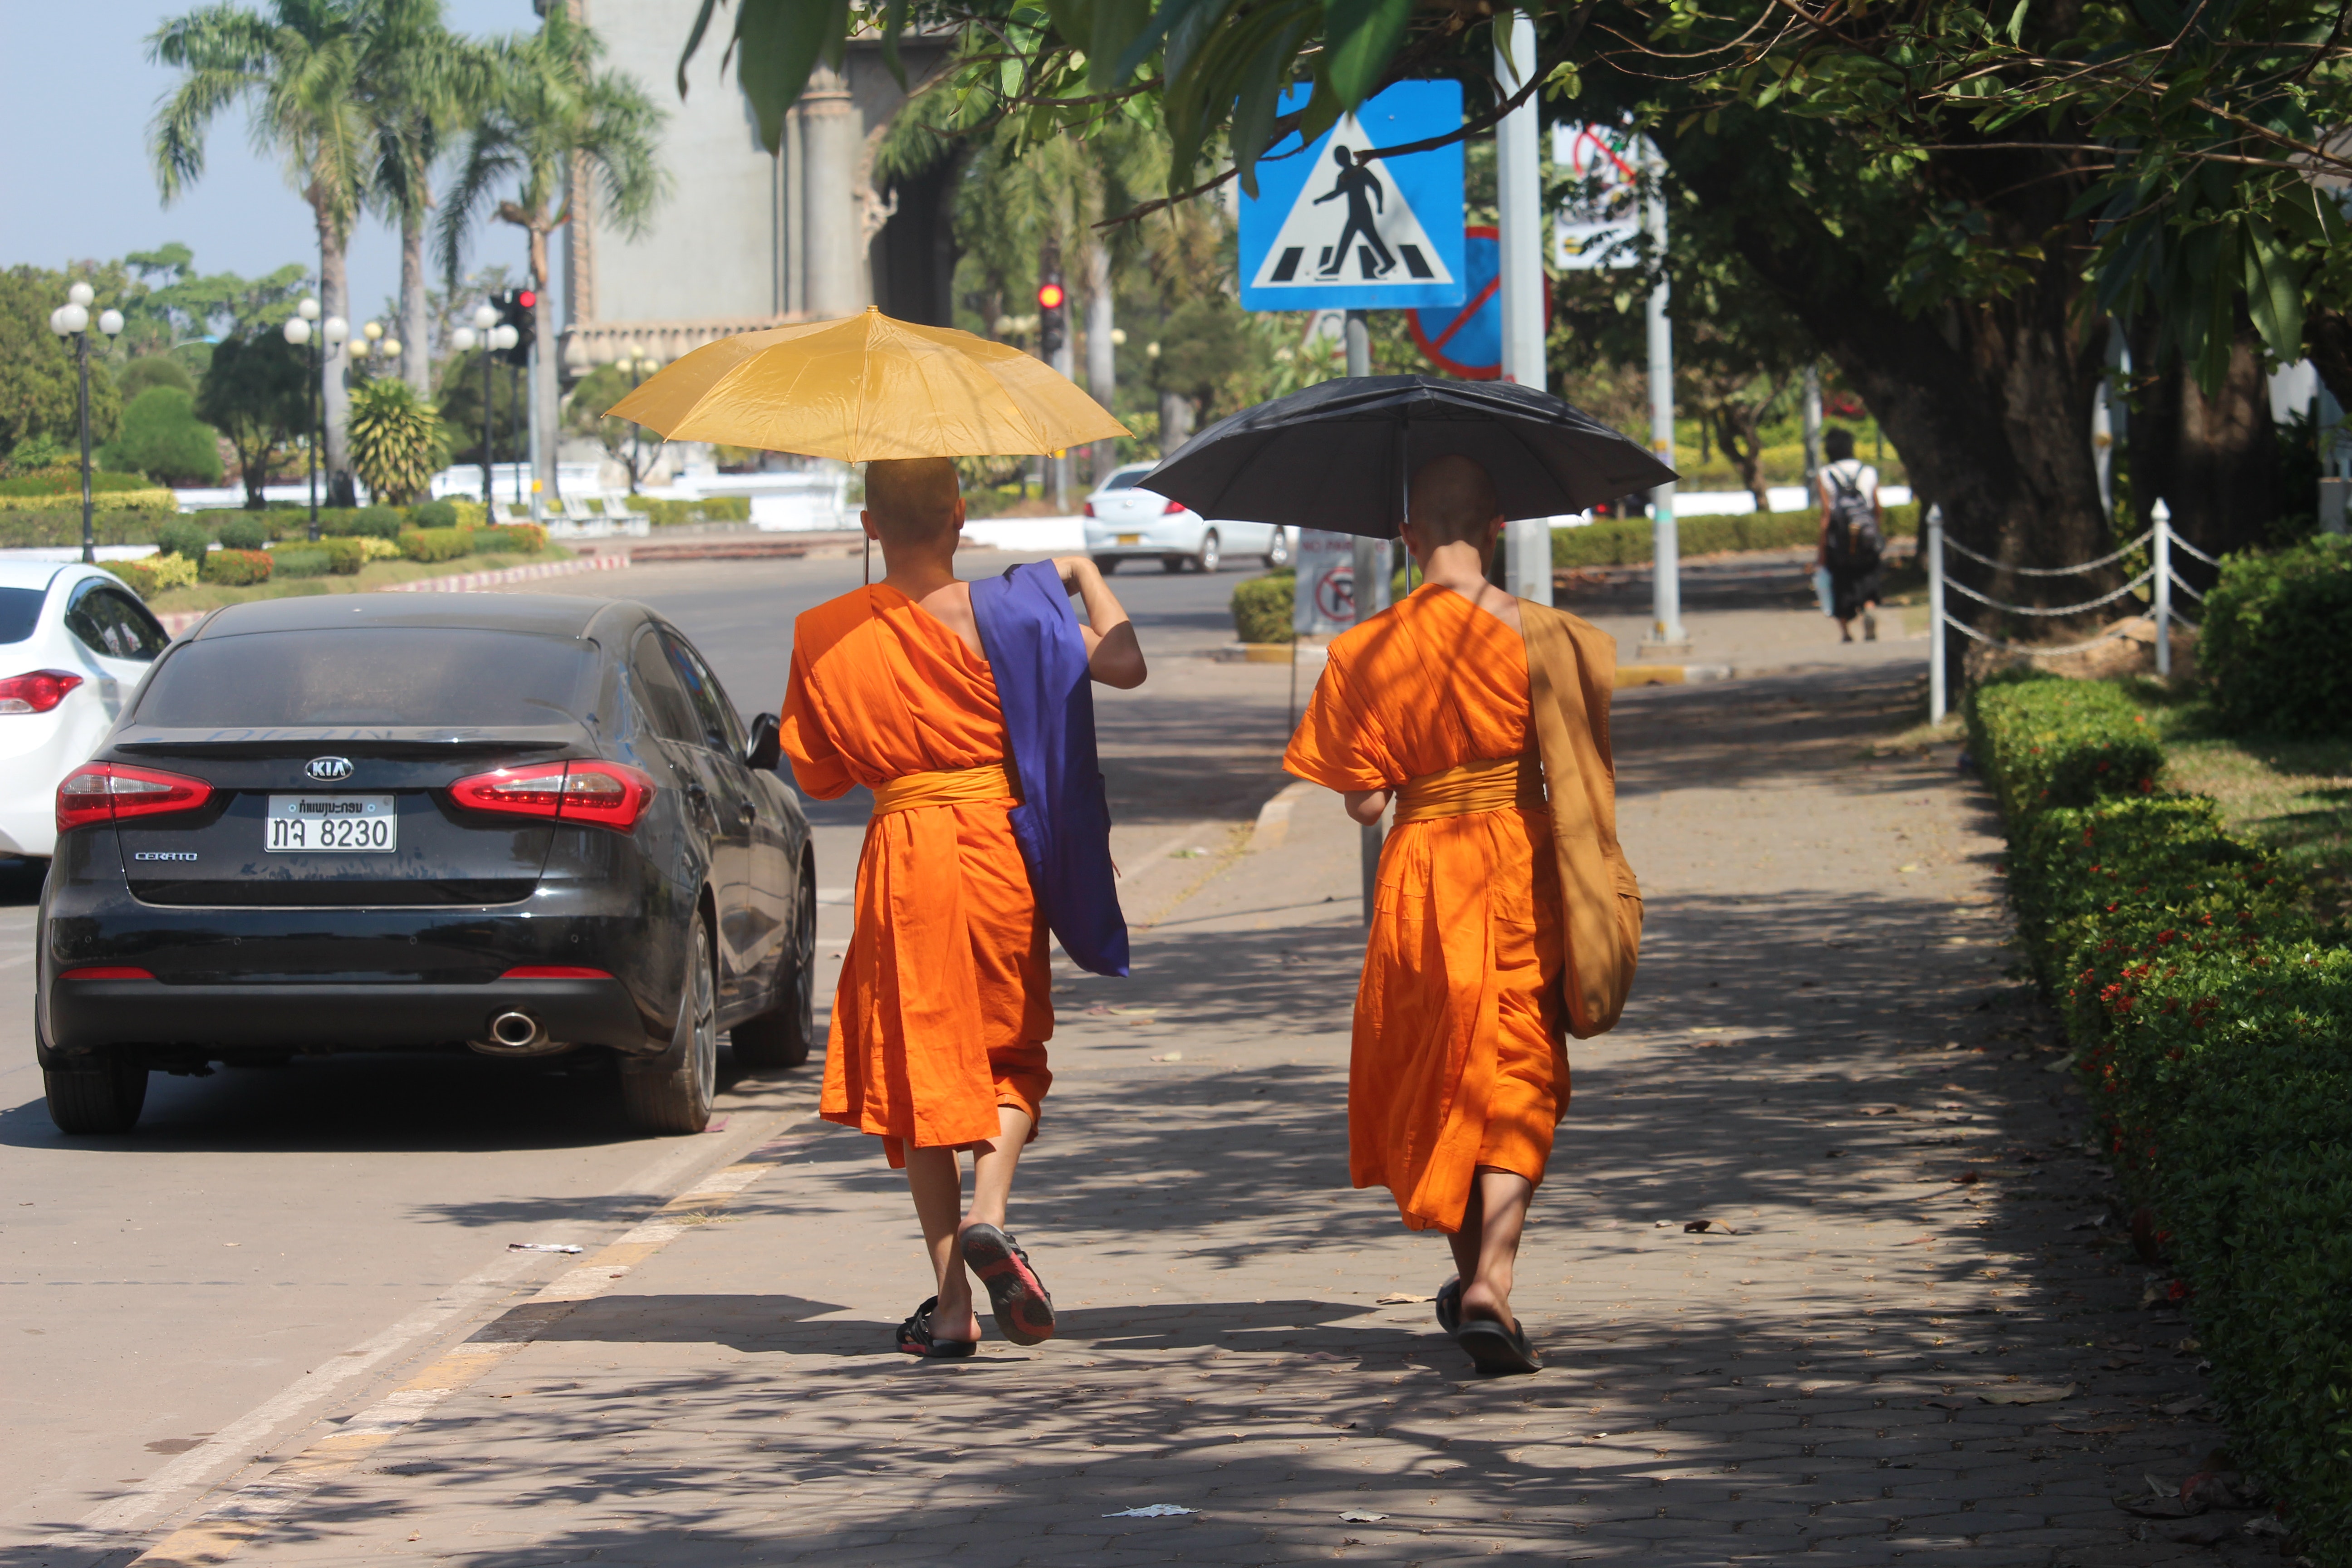 36 Surprising Reasons to Visit Laos Soon | Laos, Toronto tourism ...